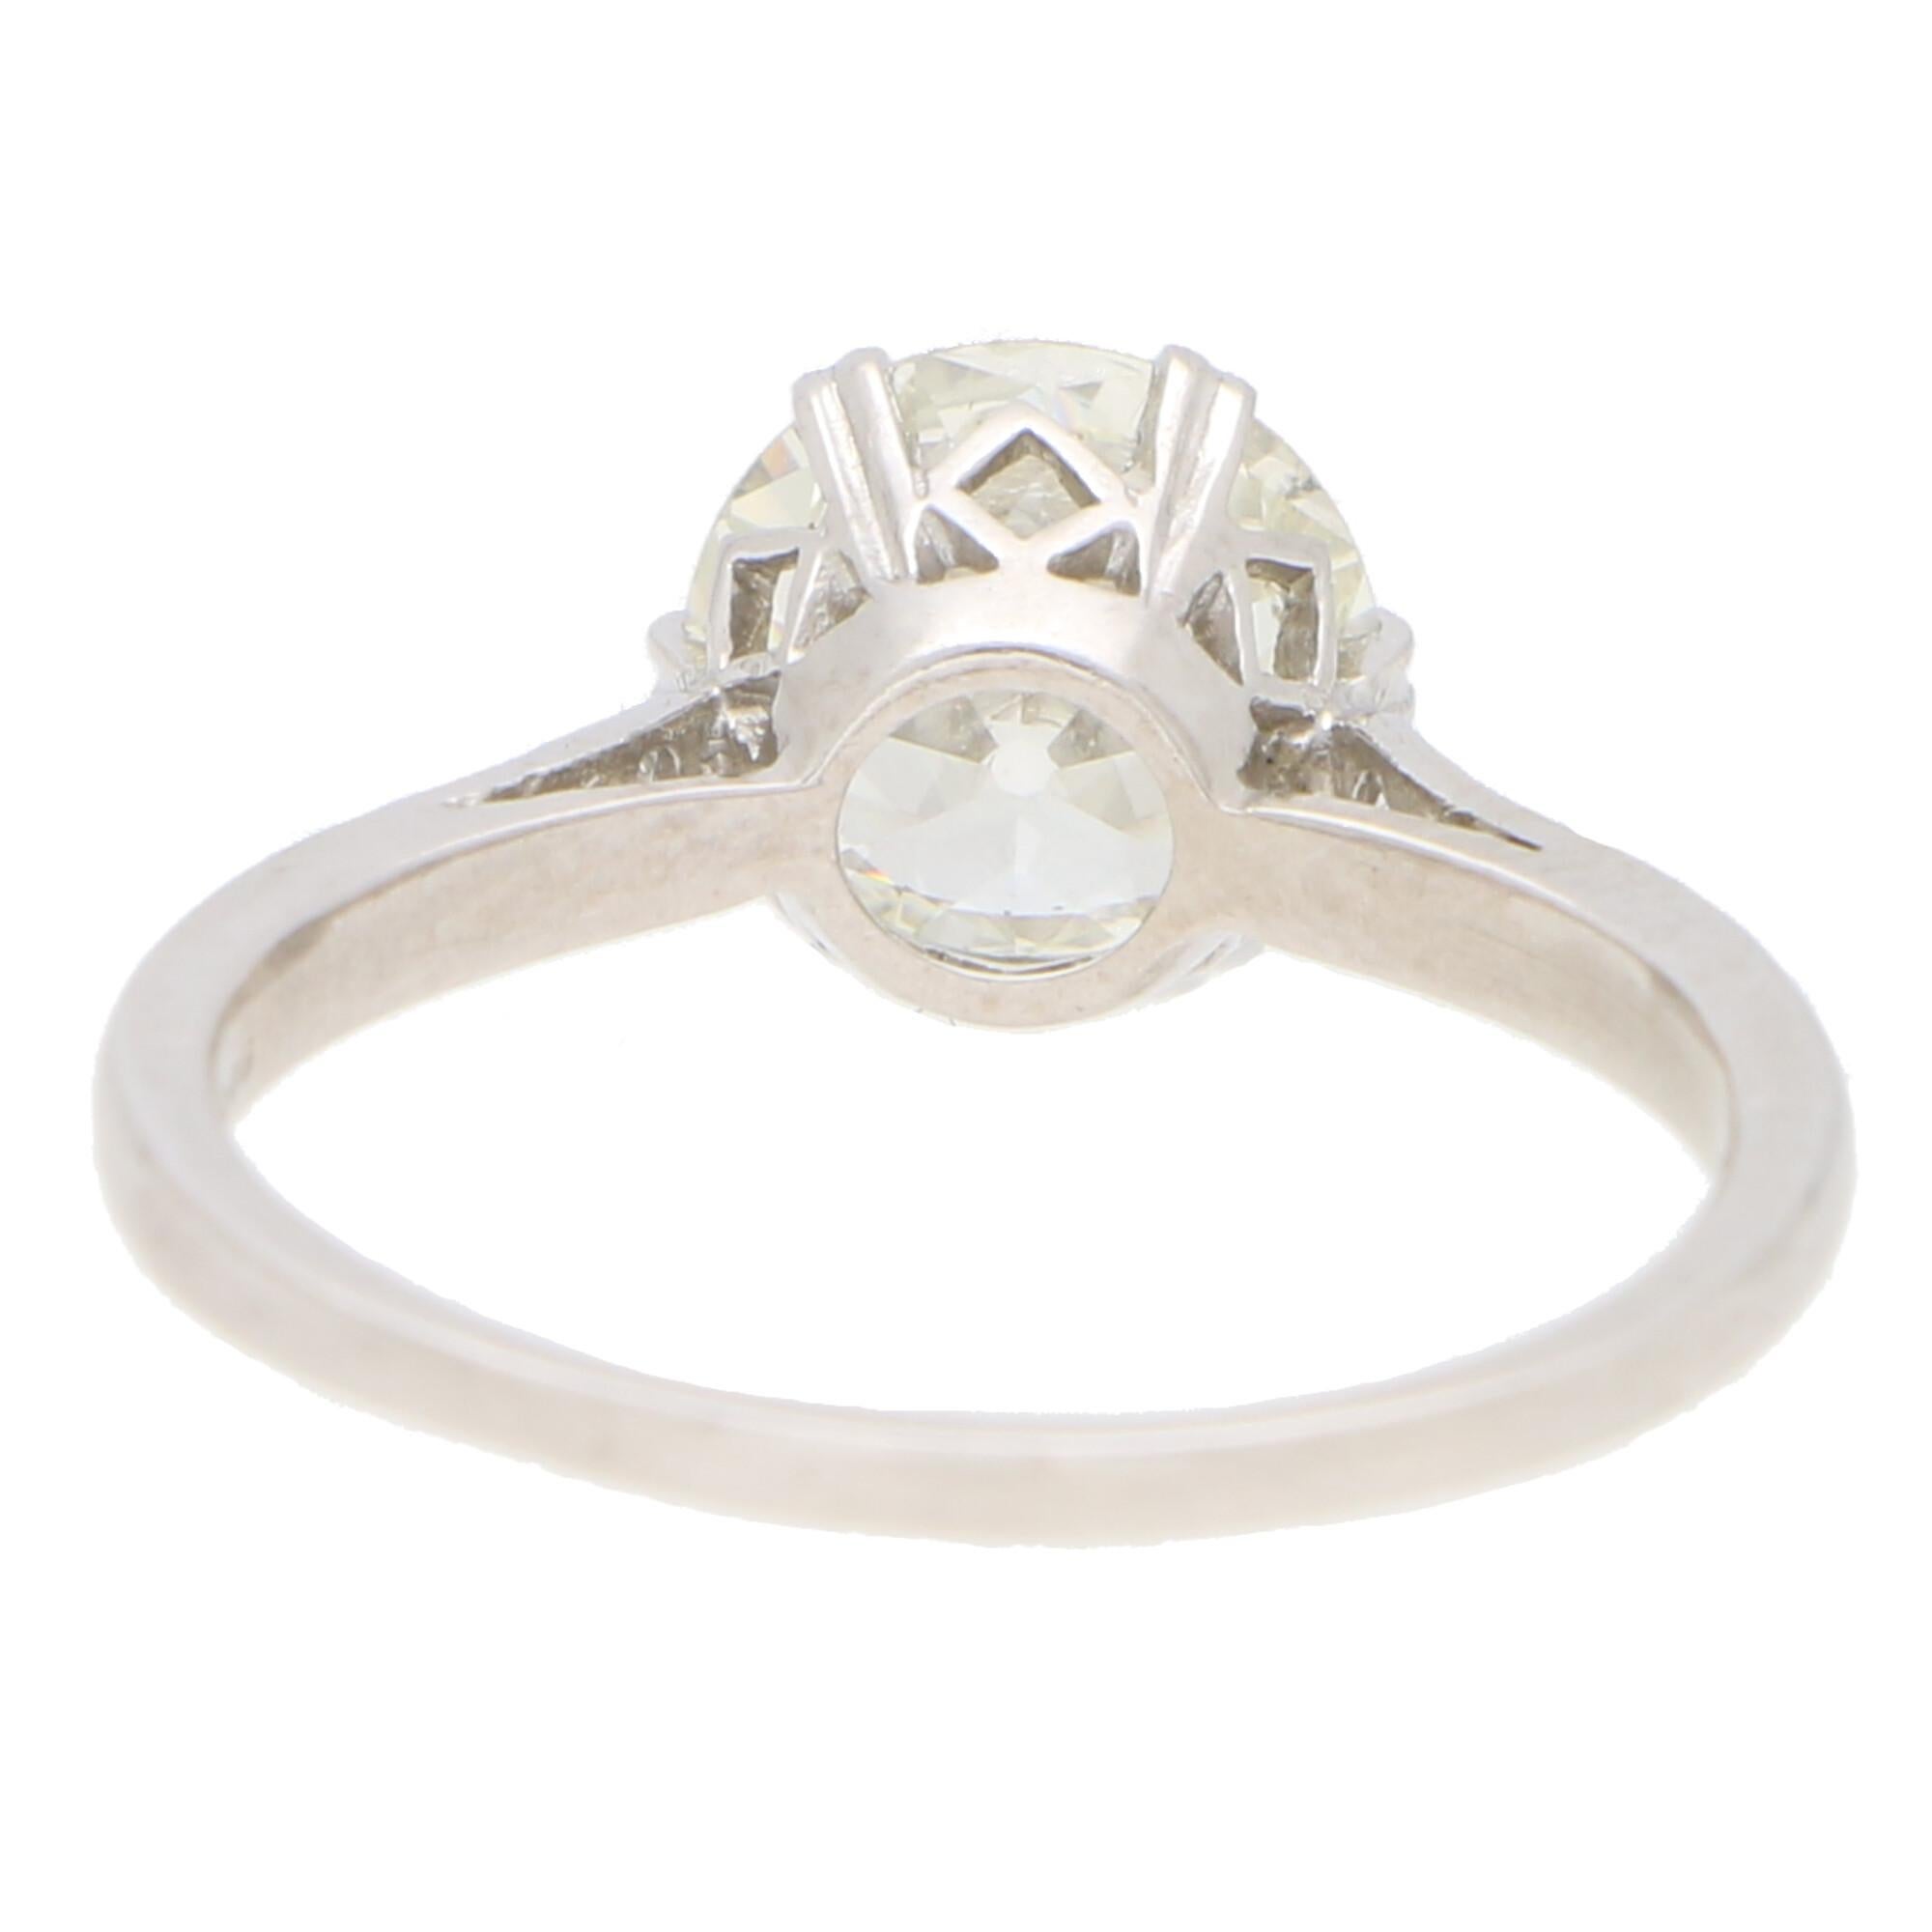 Women's or Men's Art Deco 1.85 Carat Old European Cut Diamond Solitaire Ring in Platinum